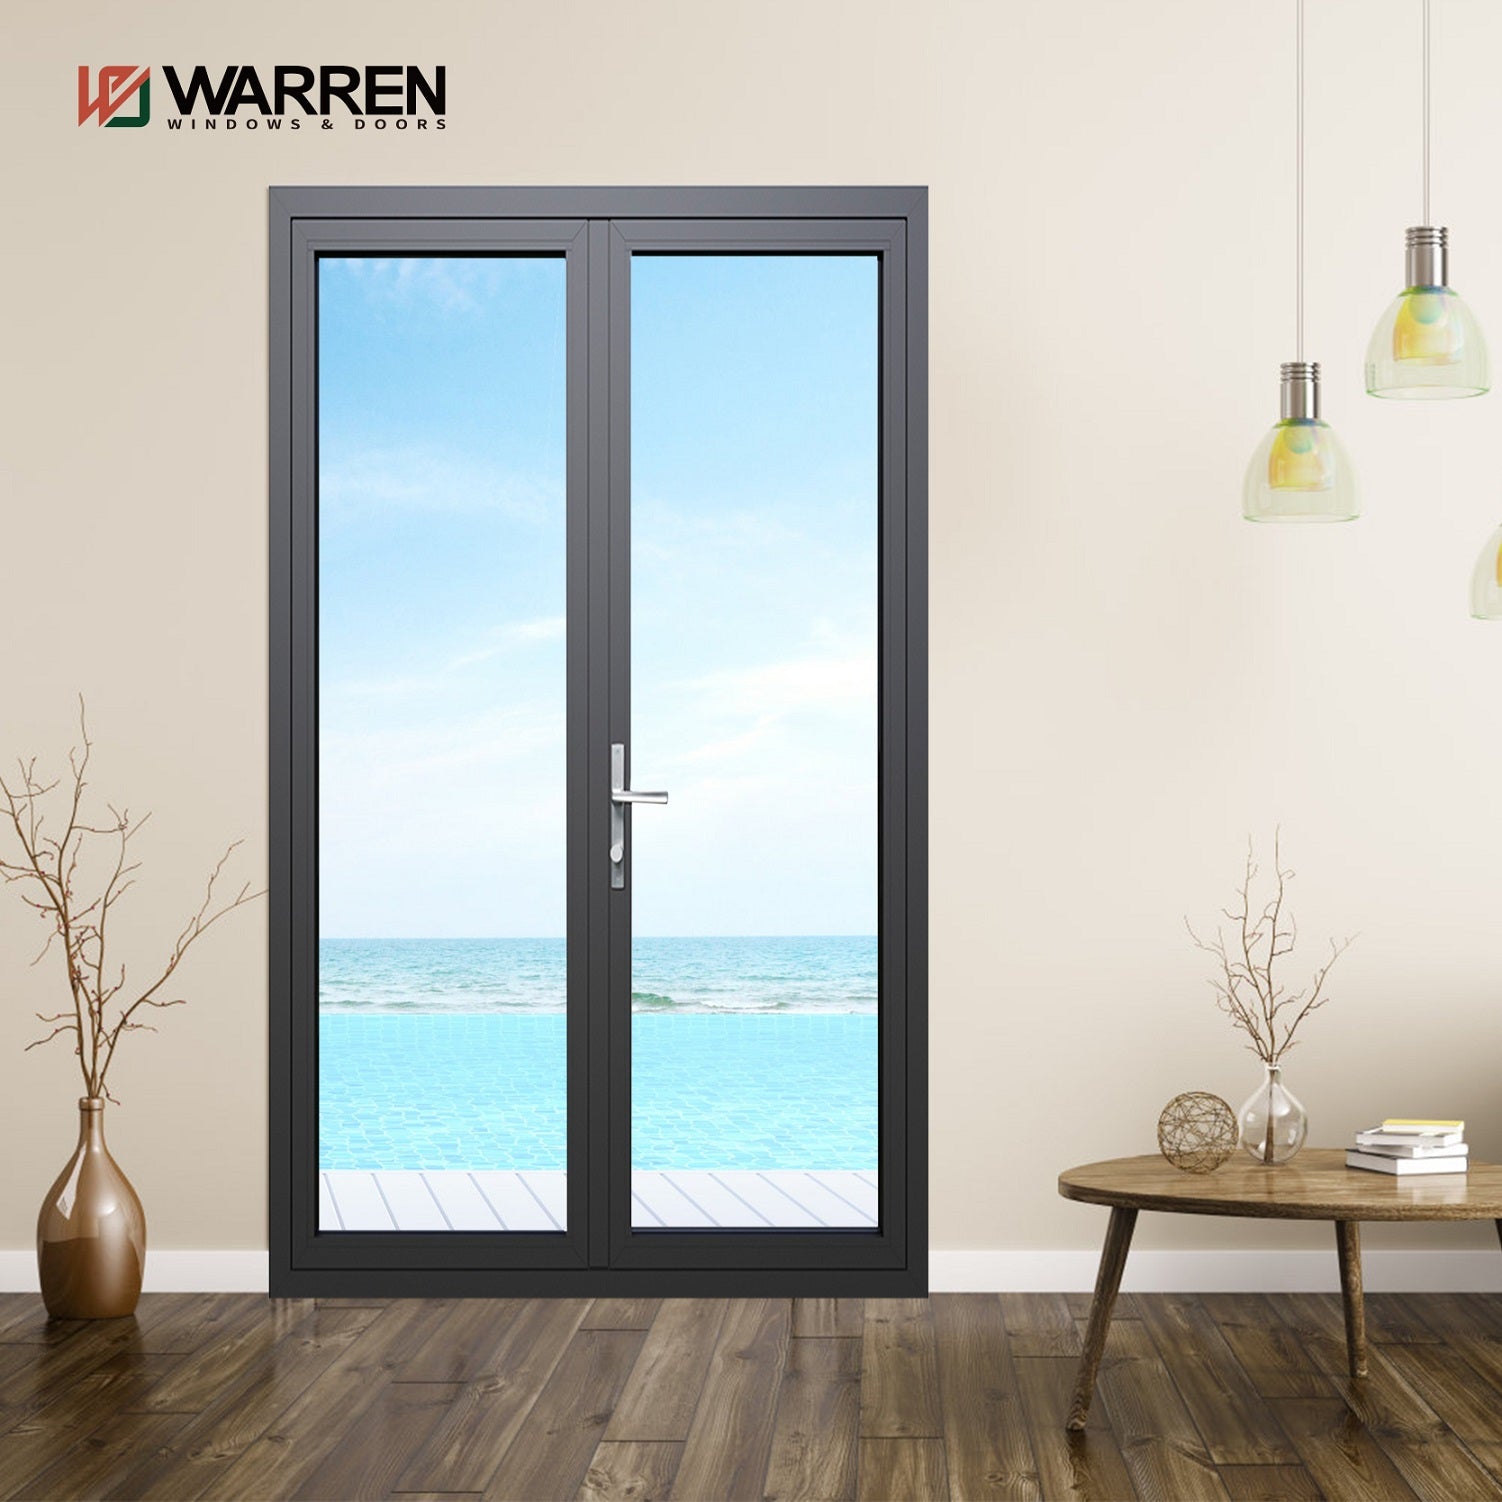 Warren 60x80 French Exterior Doors And Aluminium Internal Double Doors